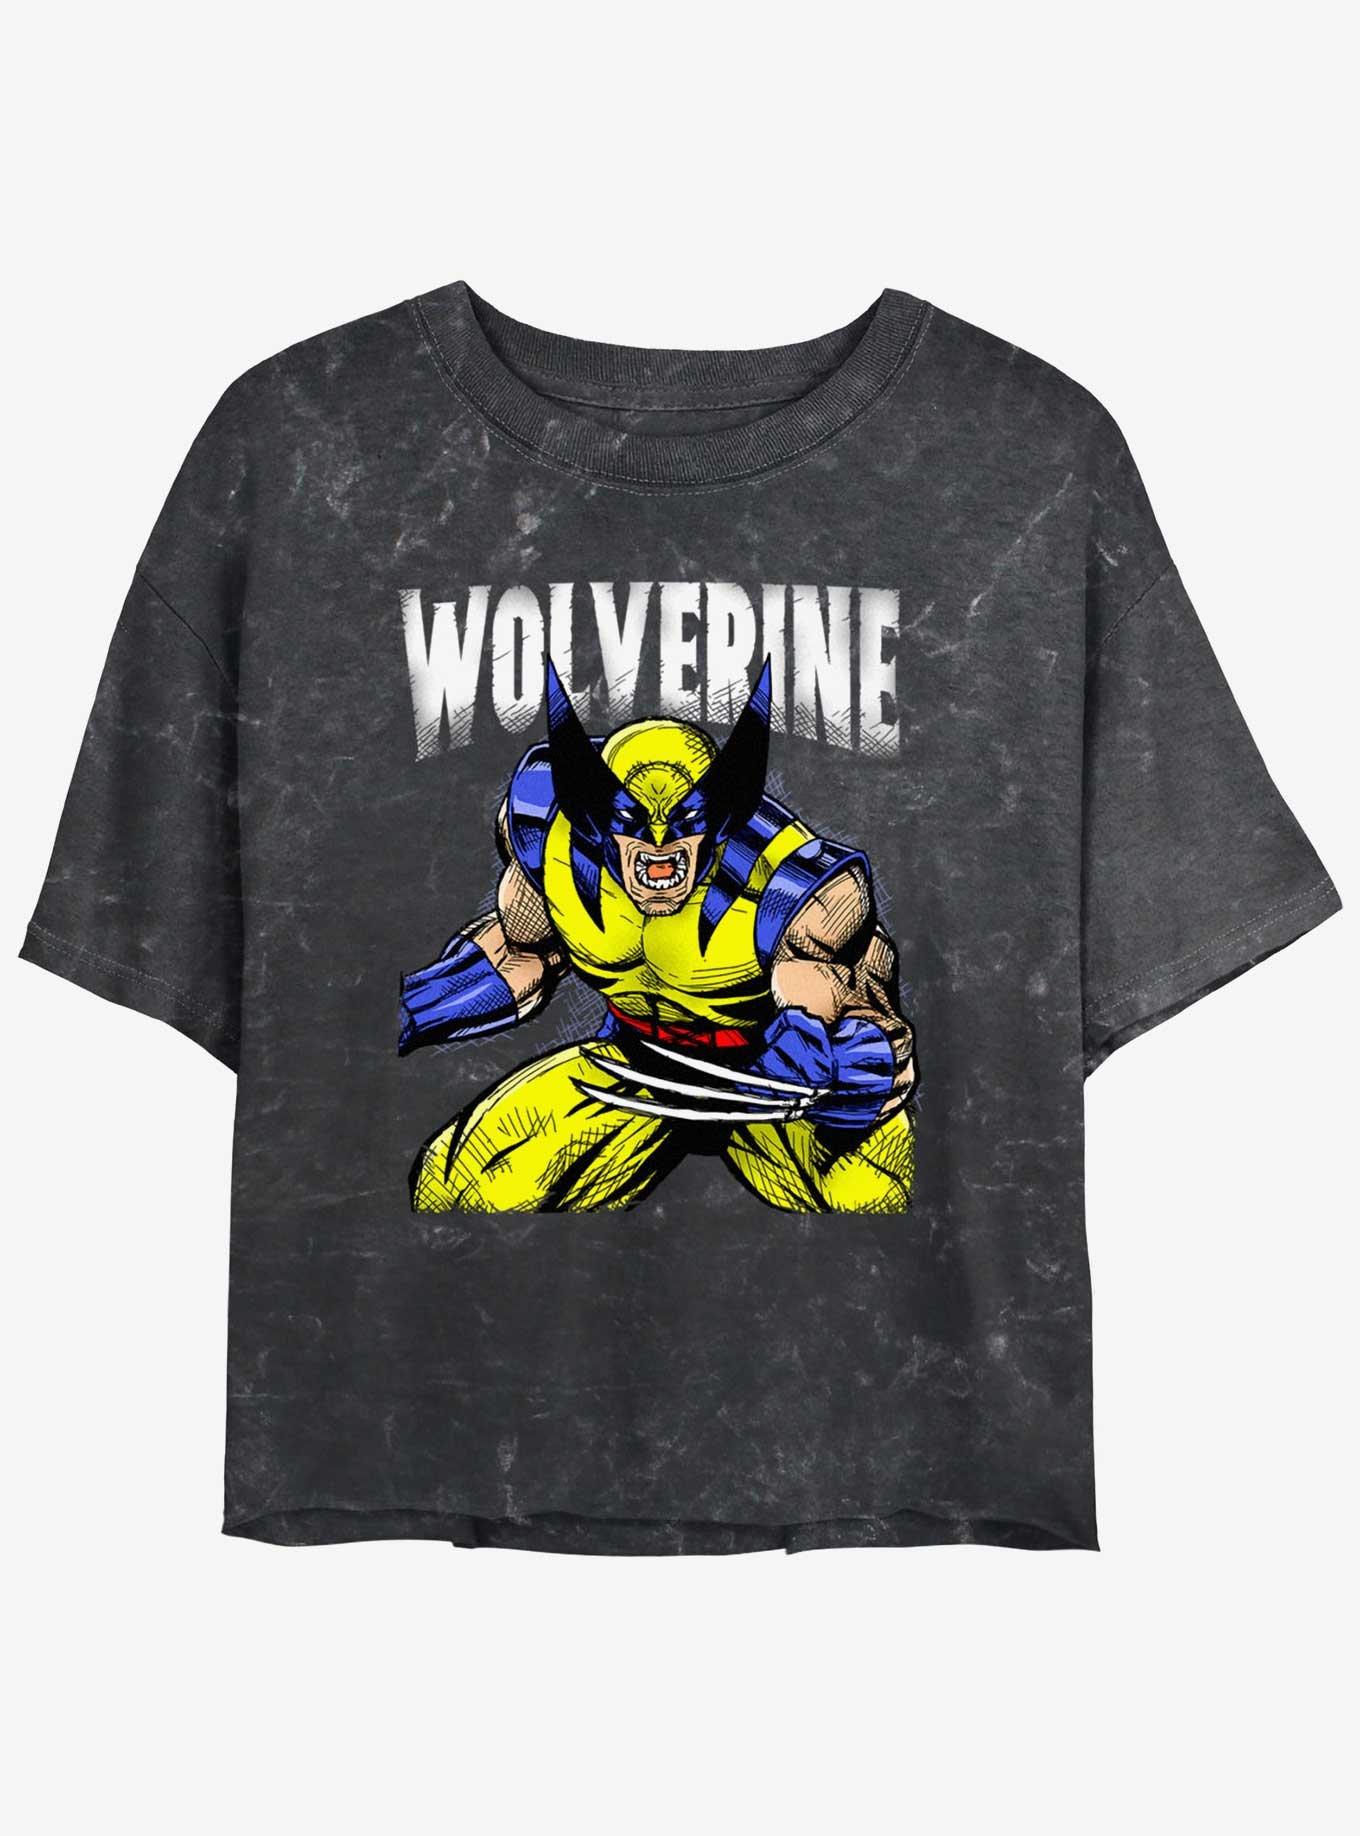 Wolverine Rage On Girls Mineral Wash Crop T-Shirt, BLACK, hi-res